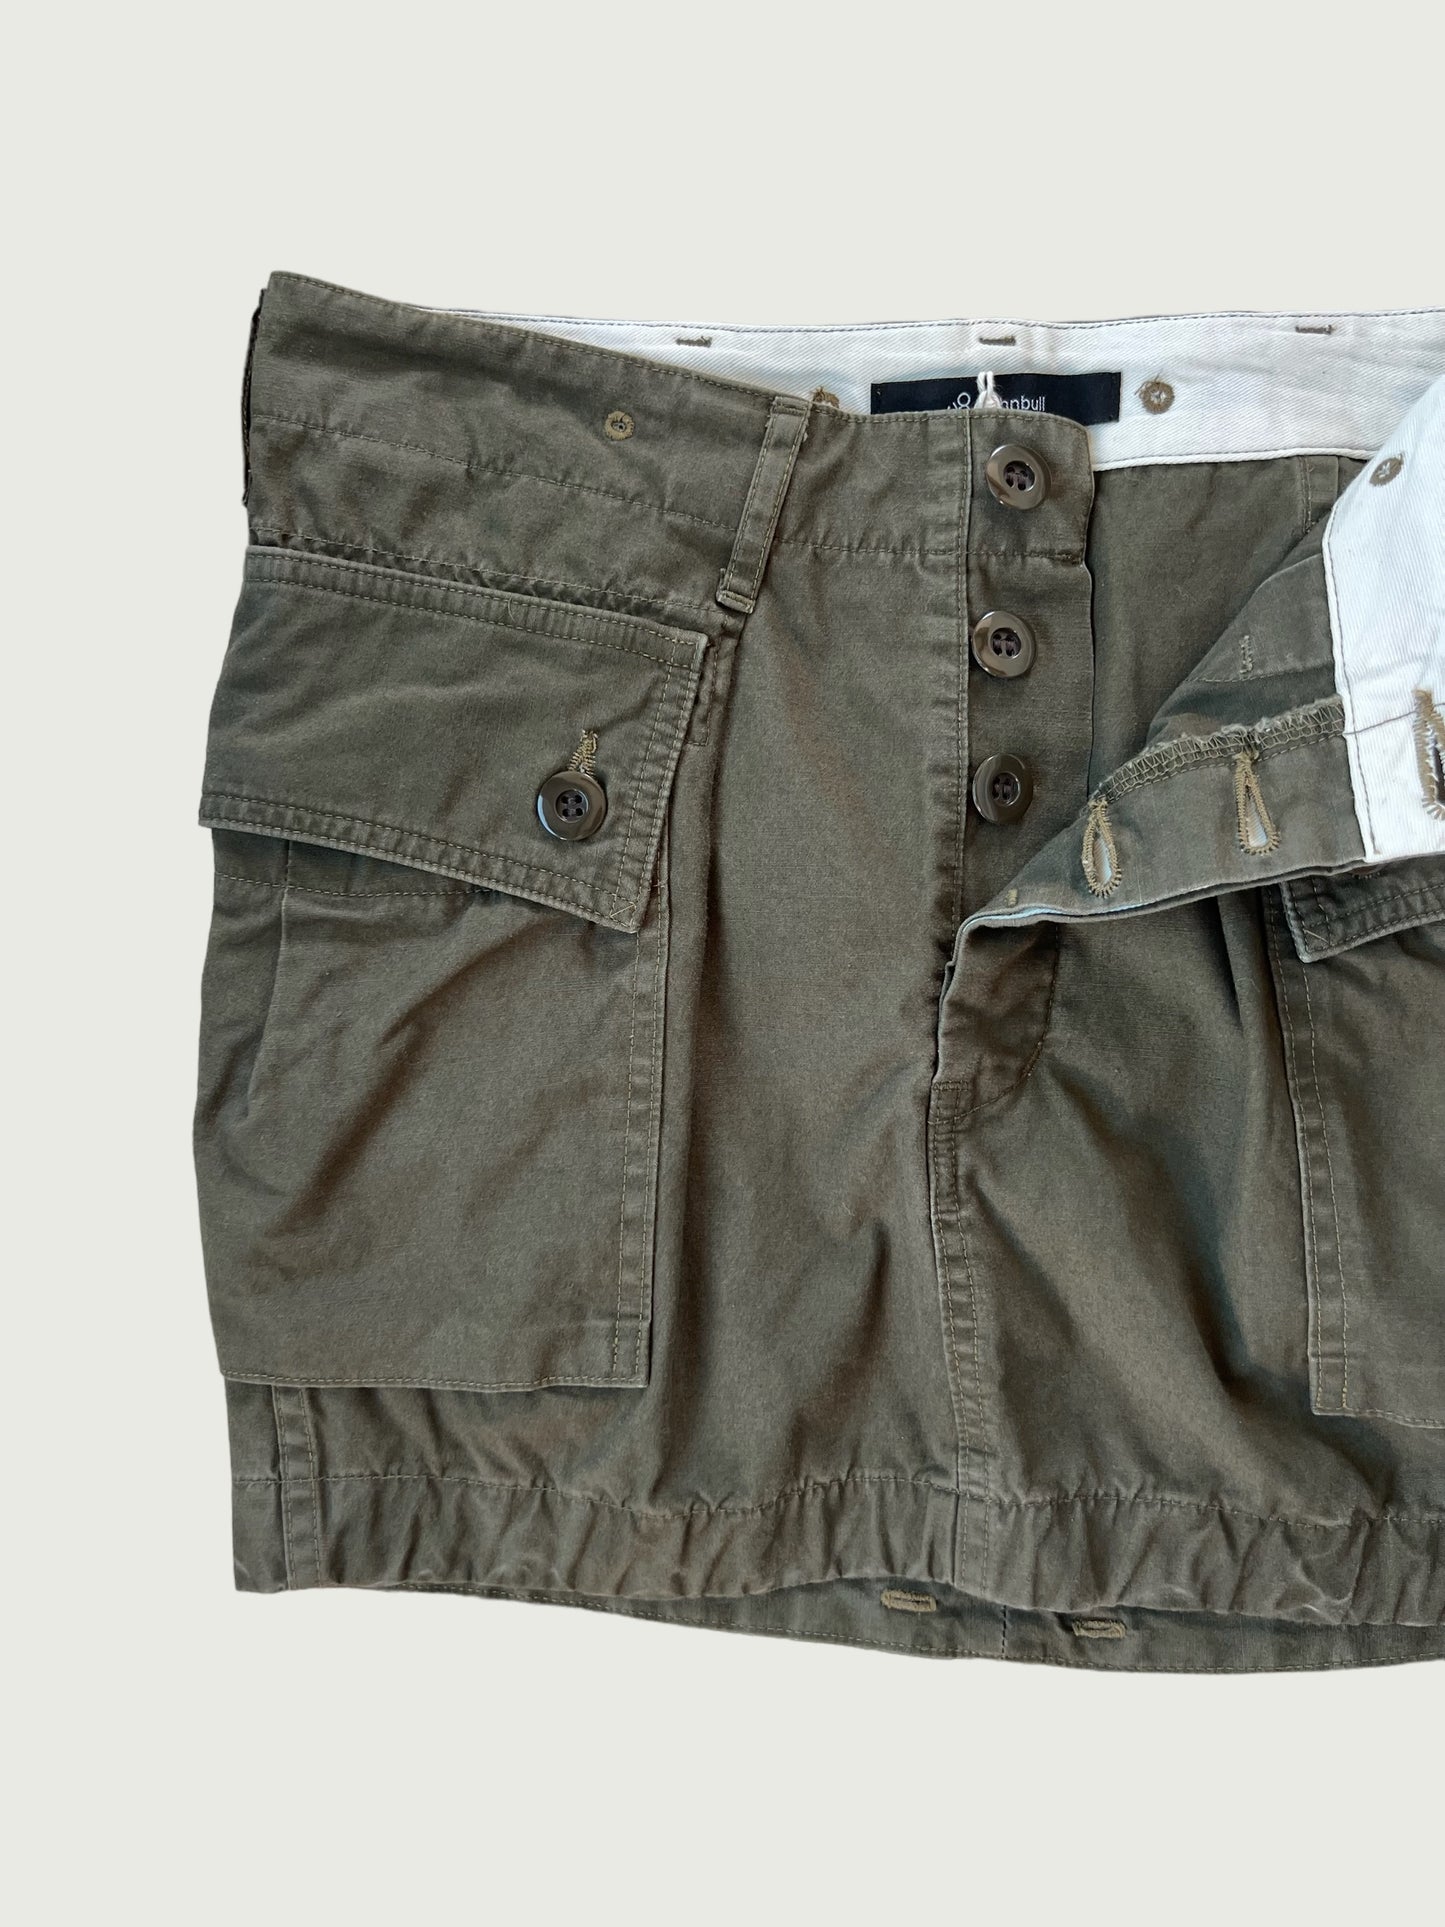 Vintage John Bull high pocket cargo mini skirt